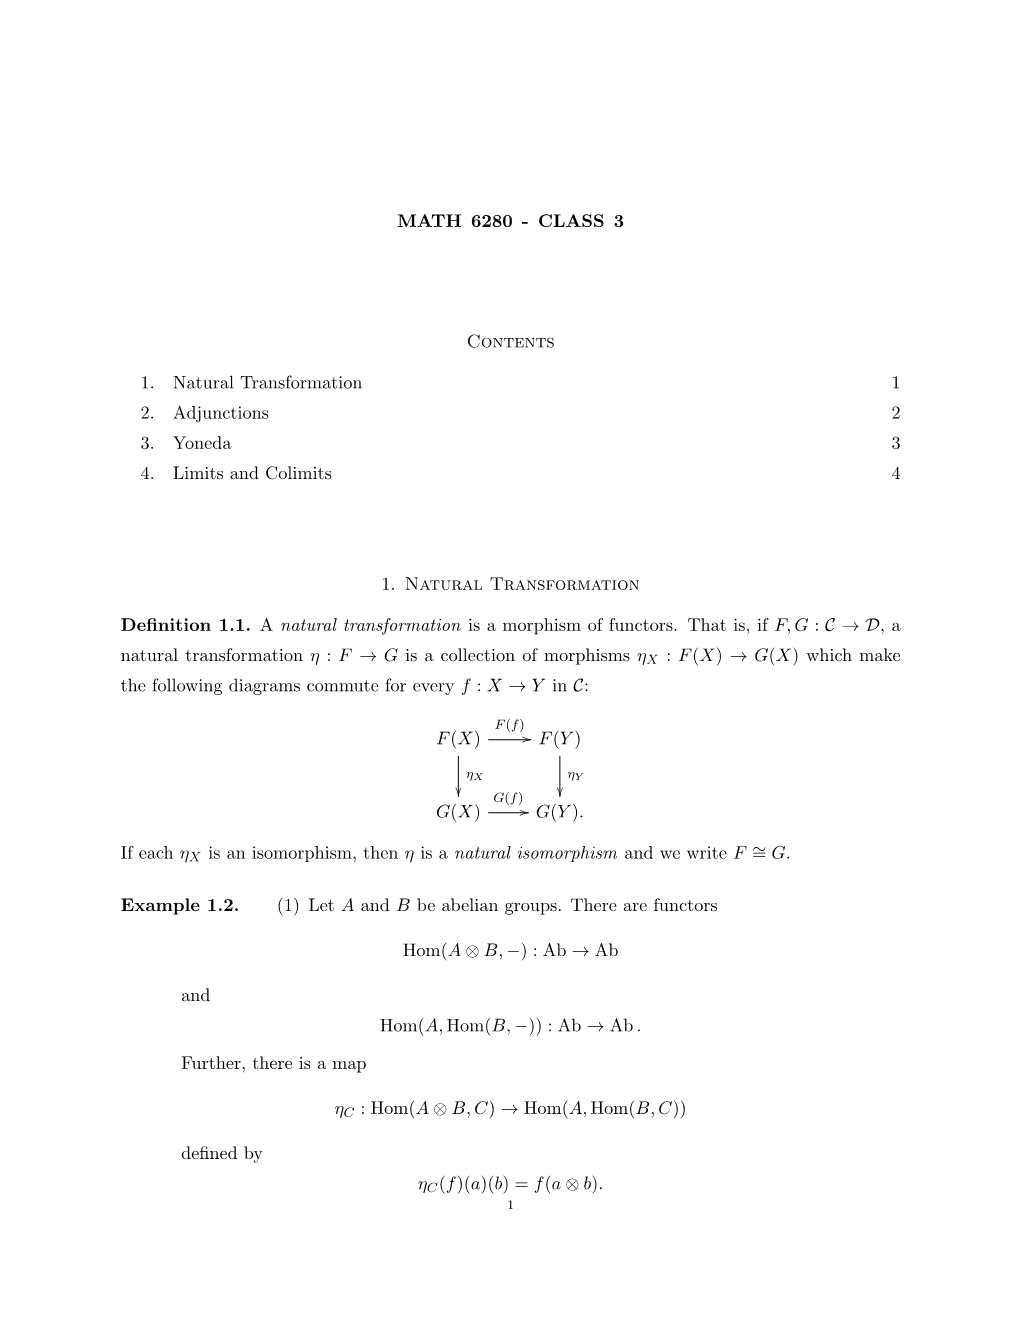 Math 6280 - Class 3